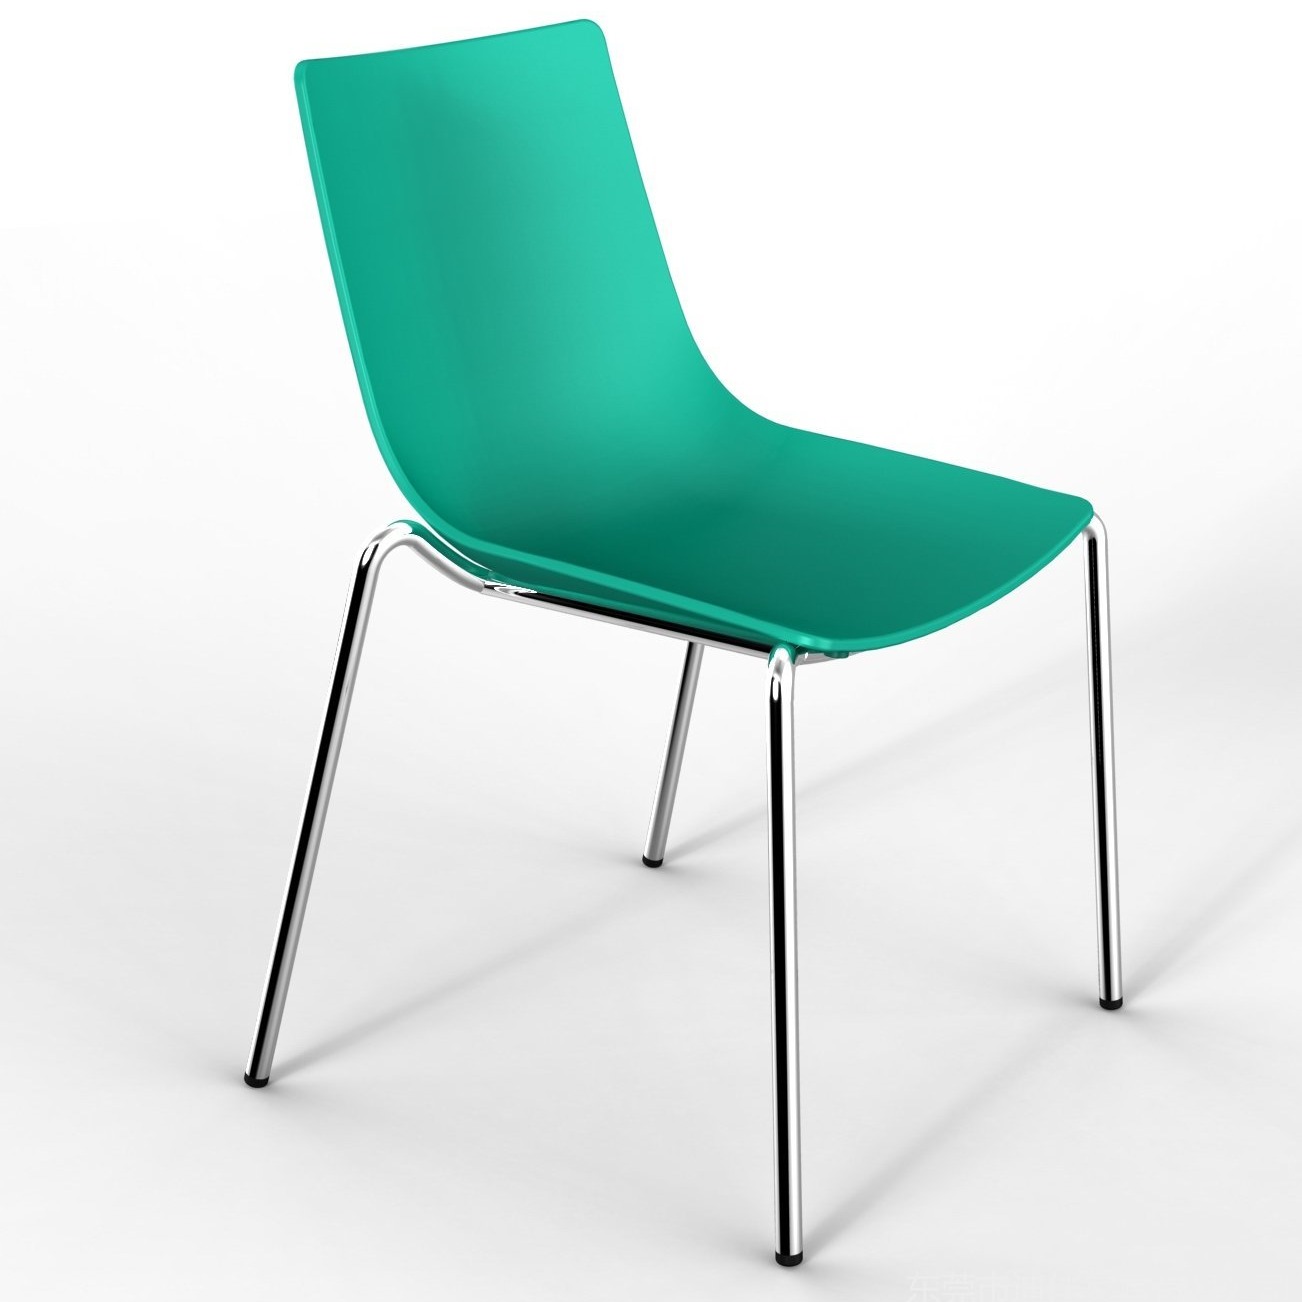 东莞塑料餐椅 PP塑料餐椅 环保塑料椅子 DJ-S1106餐椅 塑胶餐椅三件套 可定制图片